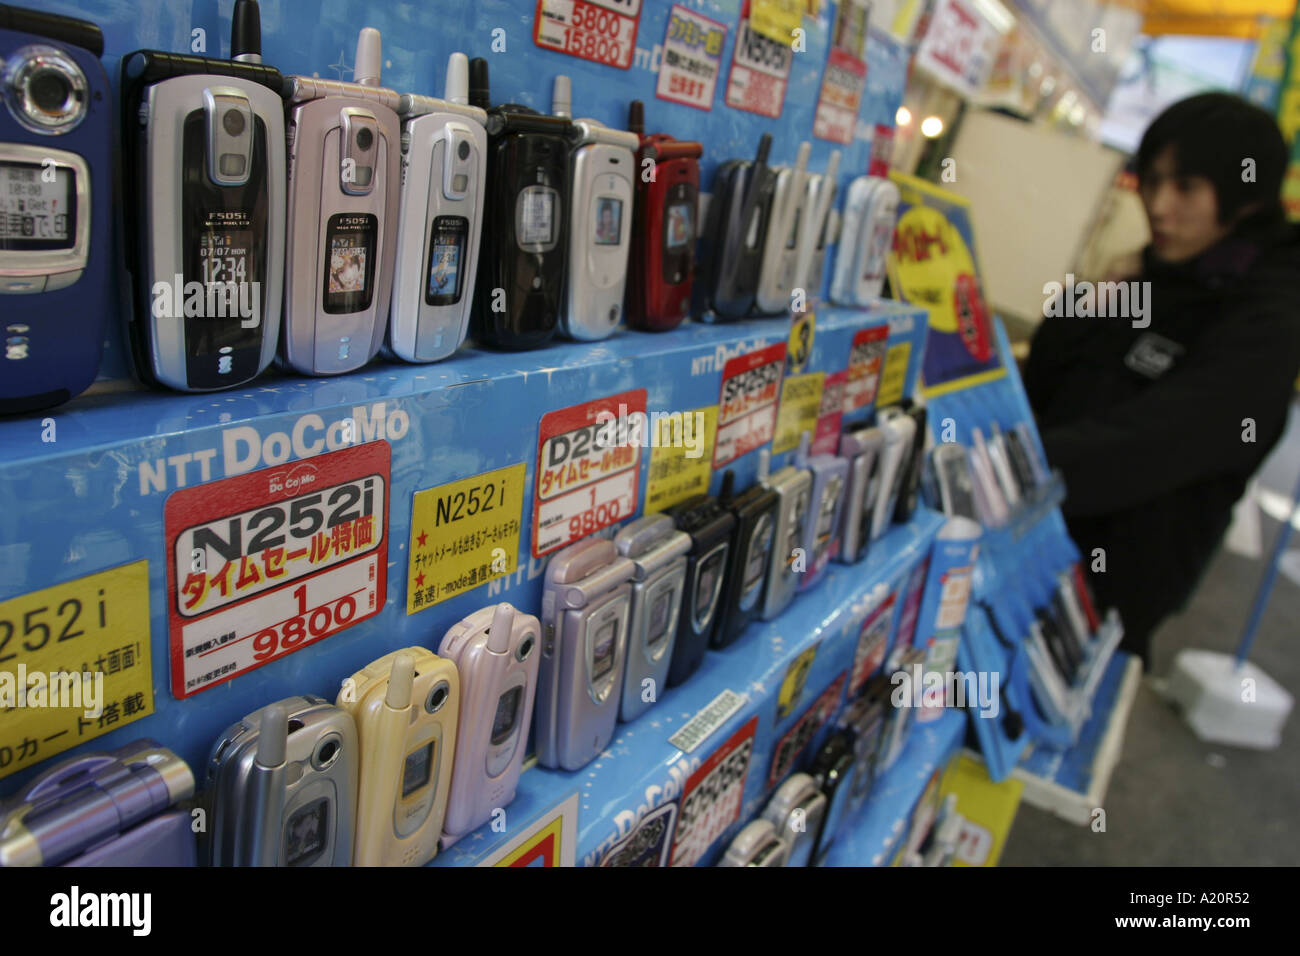 Adolescente dietro le righe di telefoni cellulari per la vendita su un NTT DoCoMo stand in un negozio di elettronica, Tokyo, Giappone Foto Stock